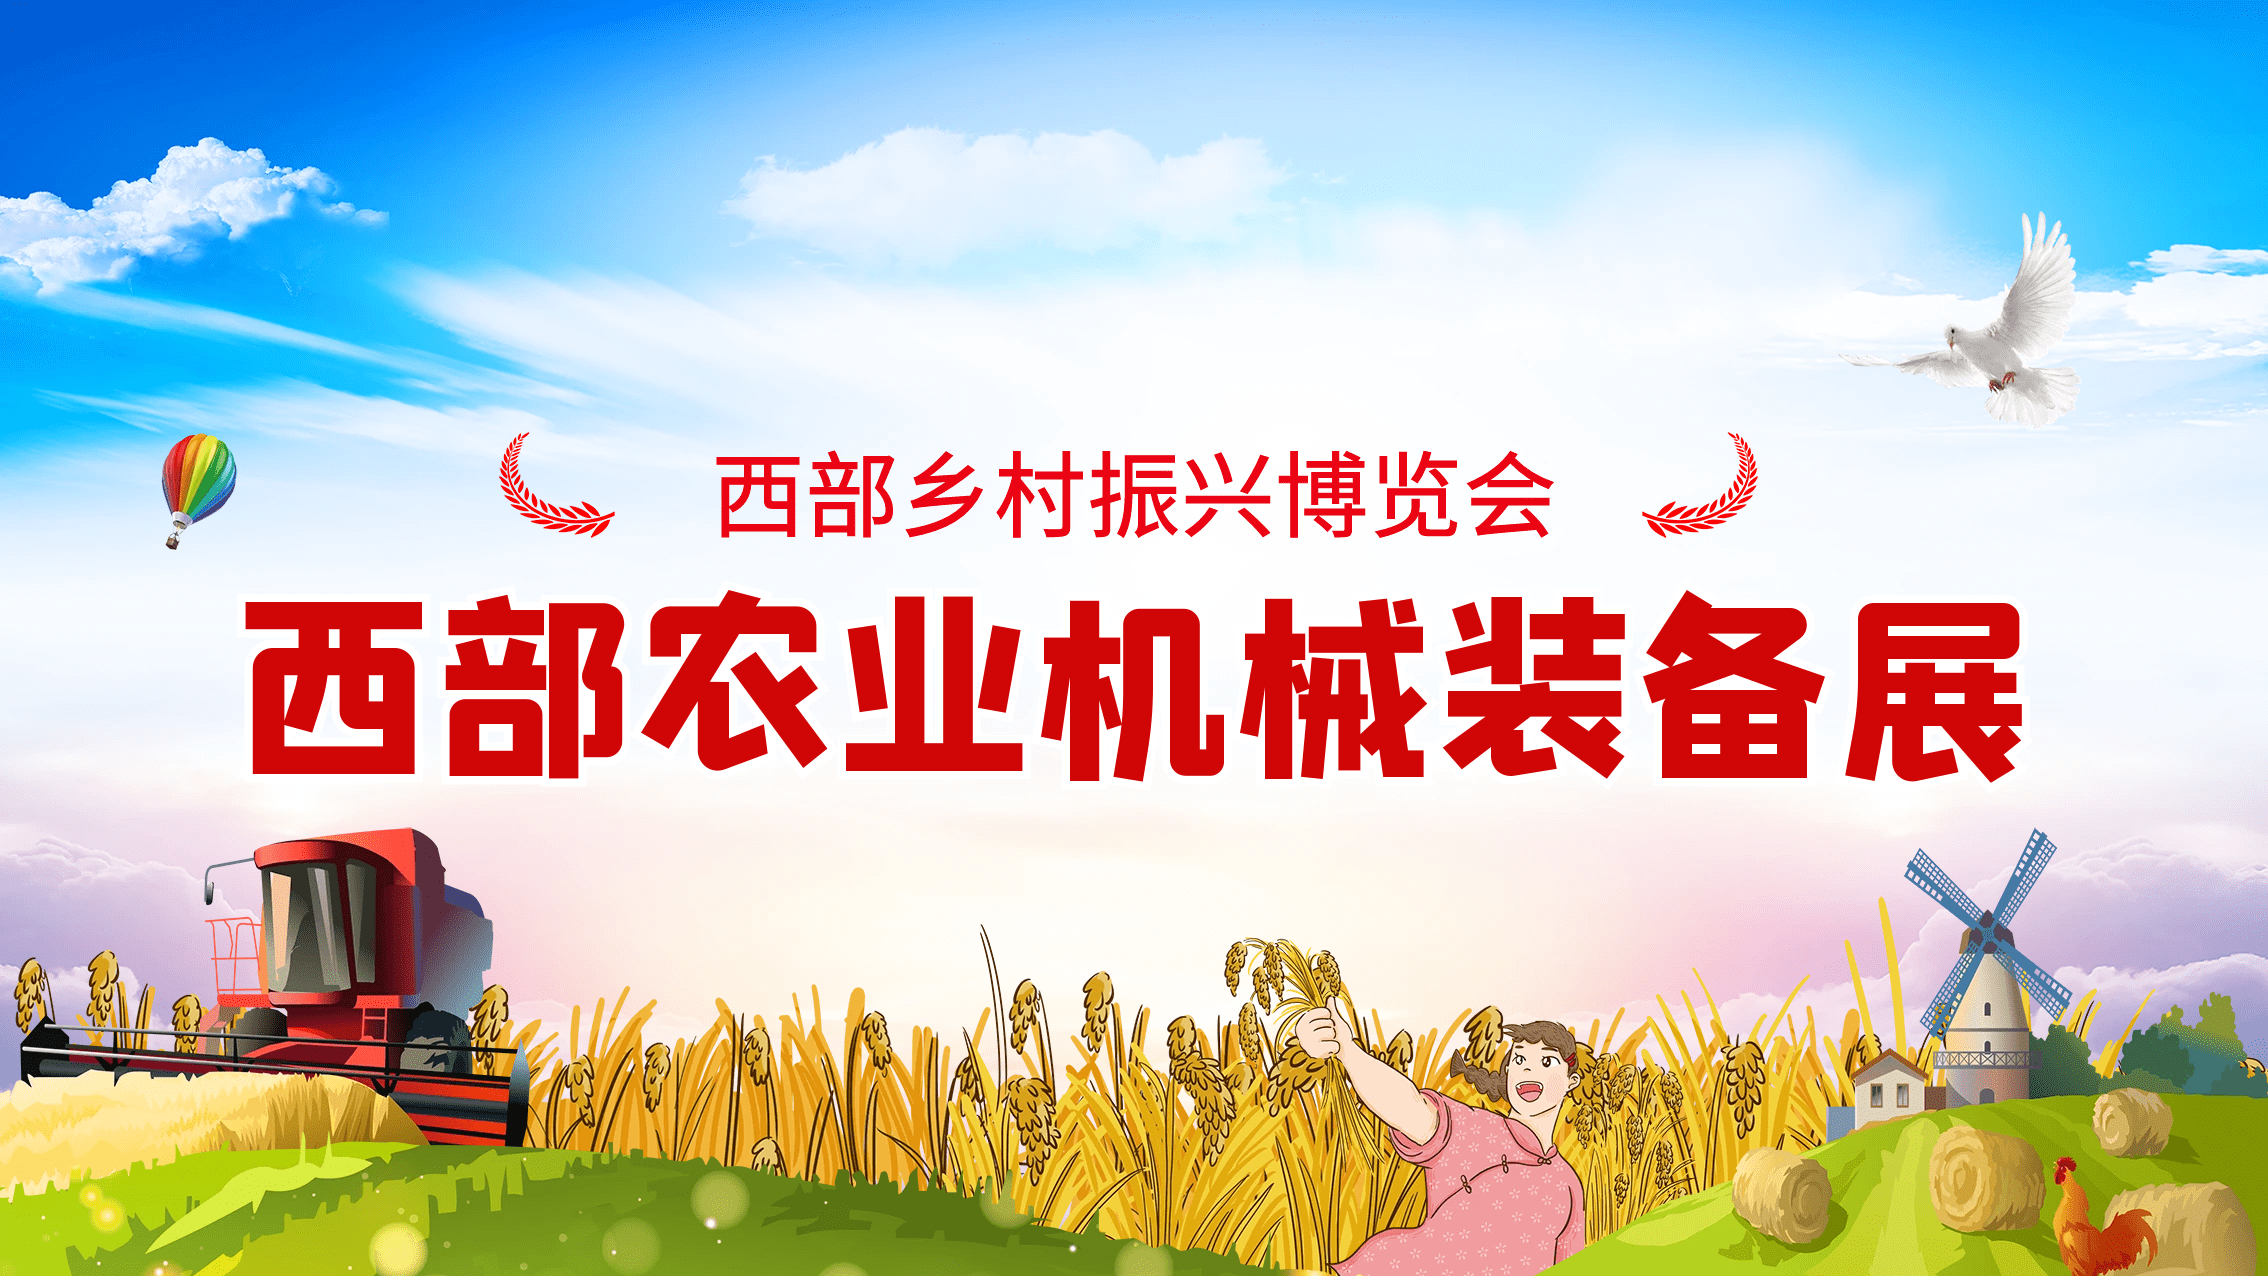 天博官方网站2024西部村落复兴展览会暨农业机器设备展(图1)